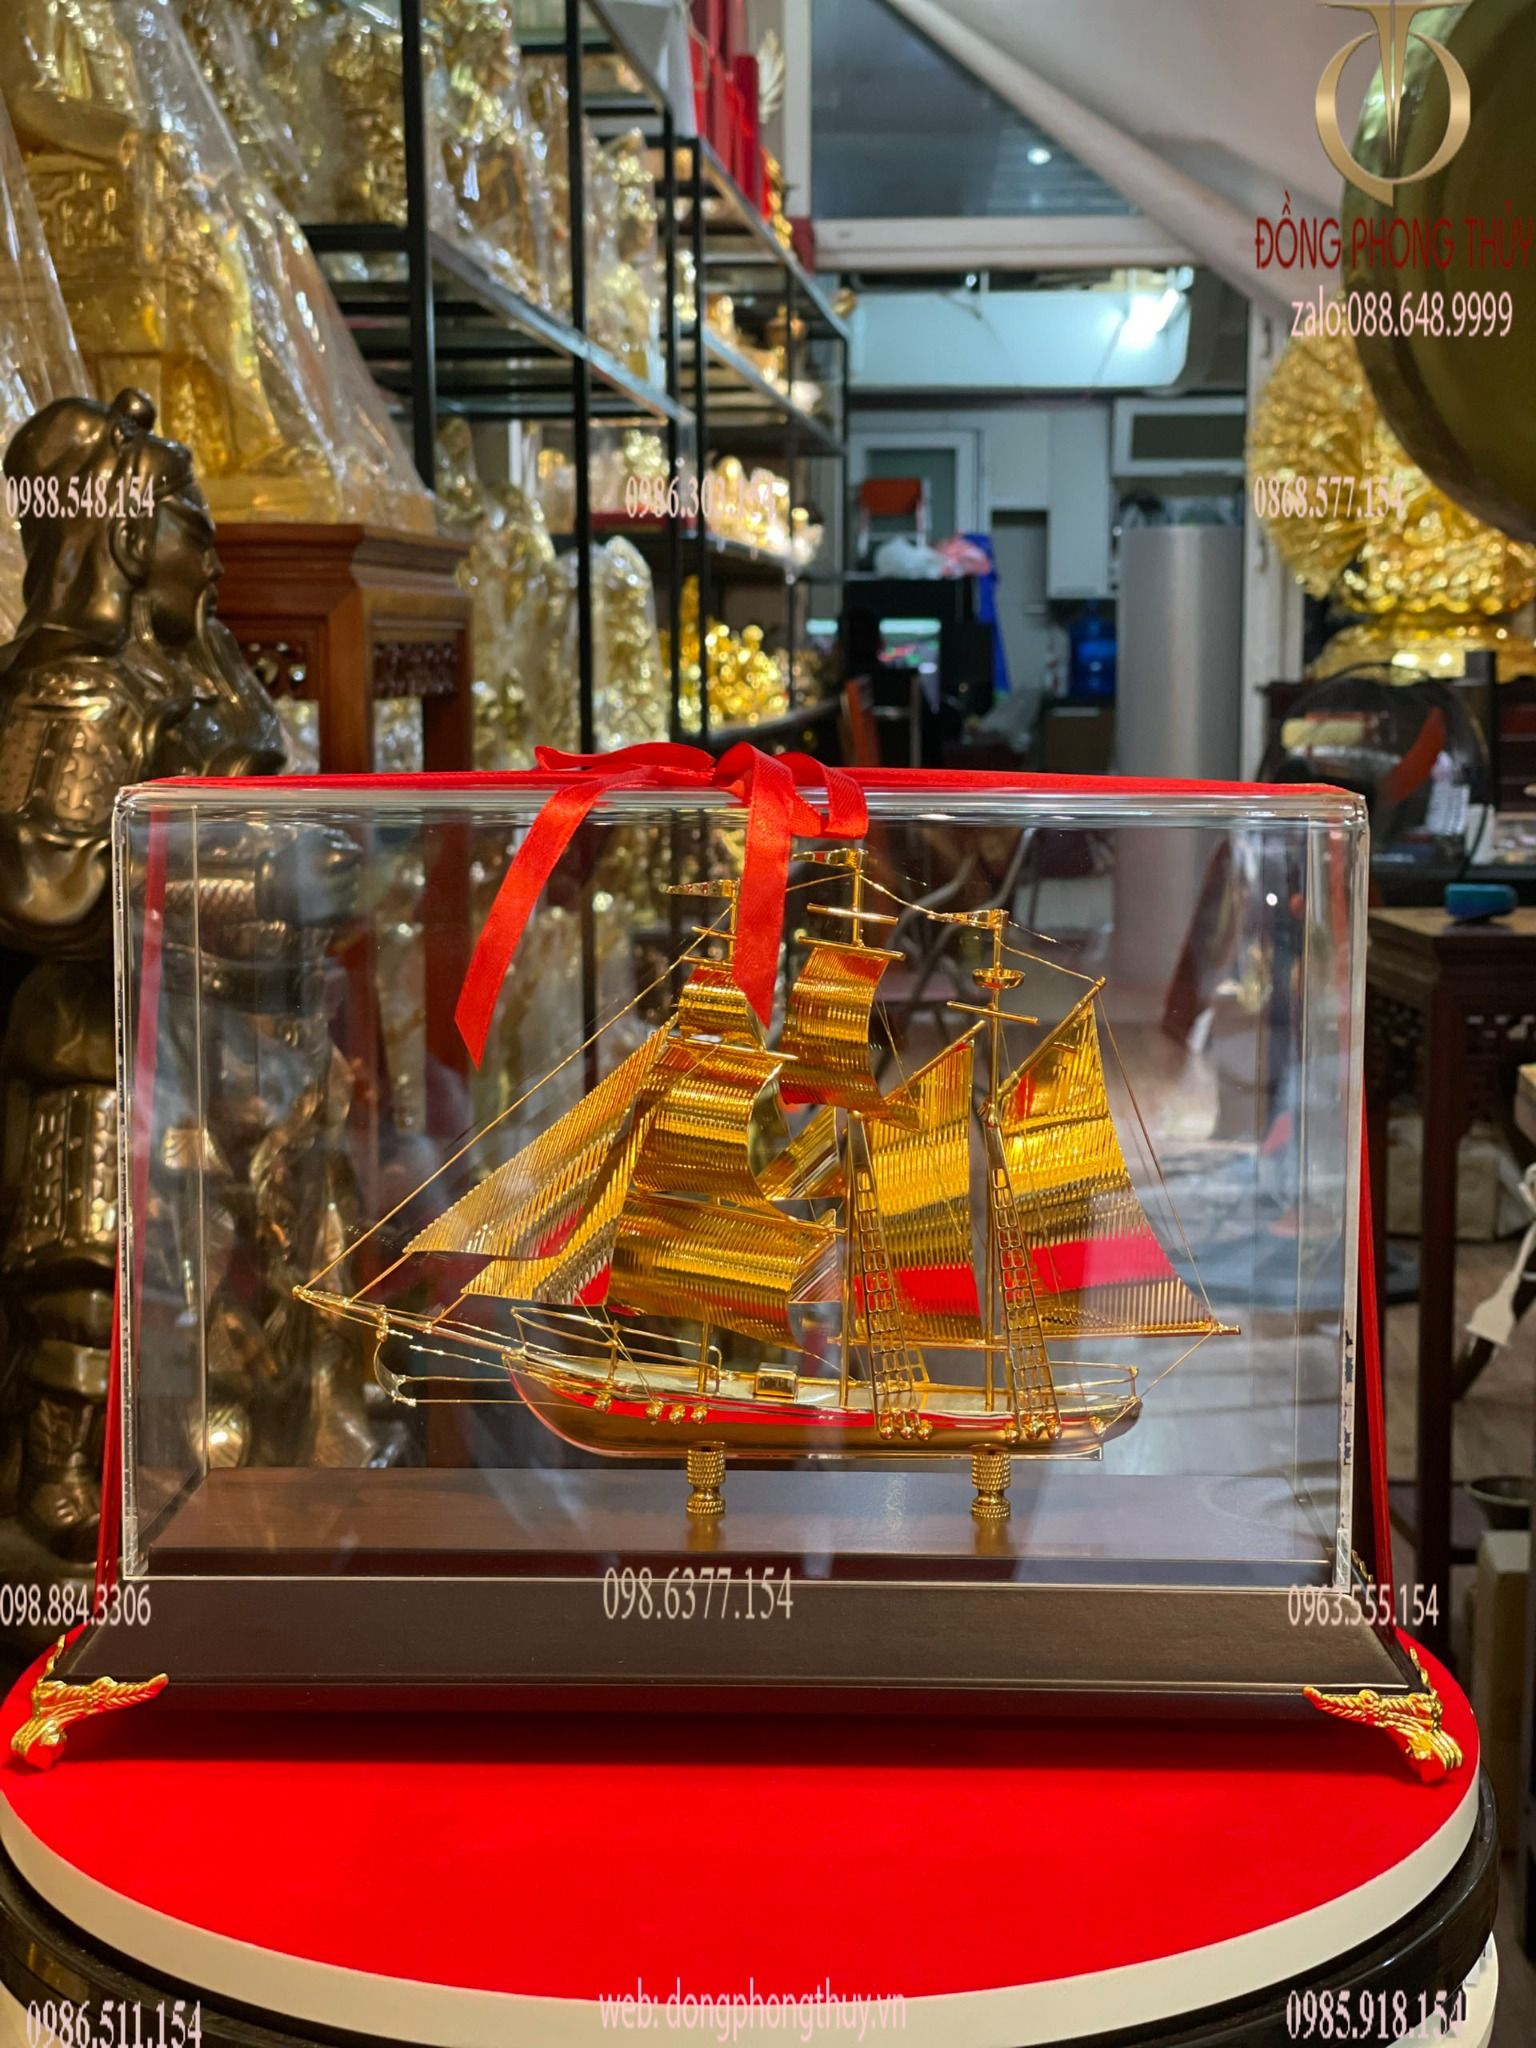 Quà tặng sếp nam nữ: Mô hình thuyền buồm bằng đồng mạ vàng 24k